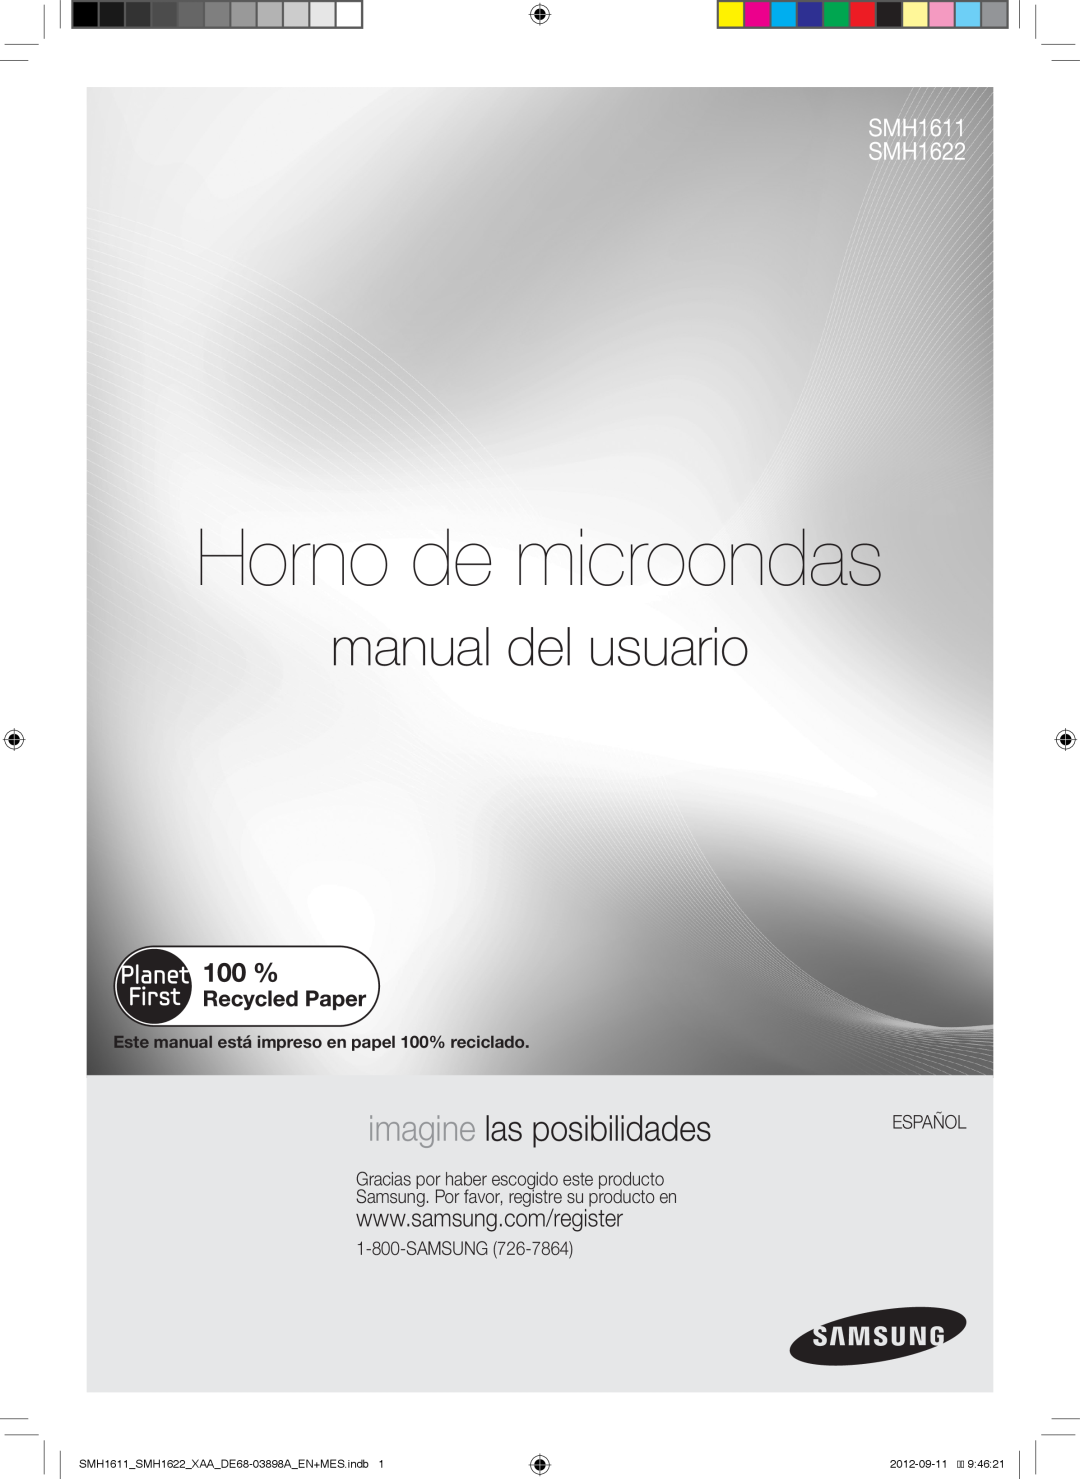 Samsung SMH1622S Horno de microondas, manual del usuario, imagine las posibilidades, SMH1611 SMH1622, Español, 2012-09-119 